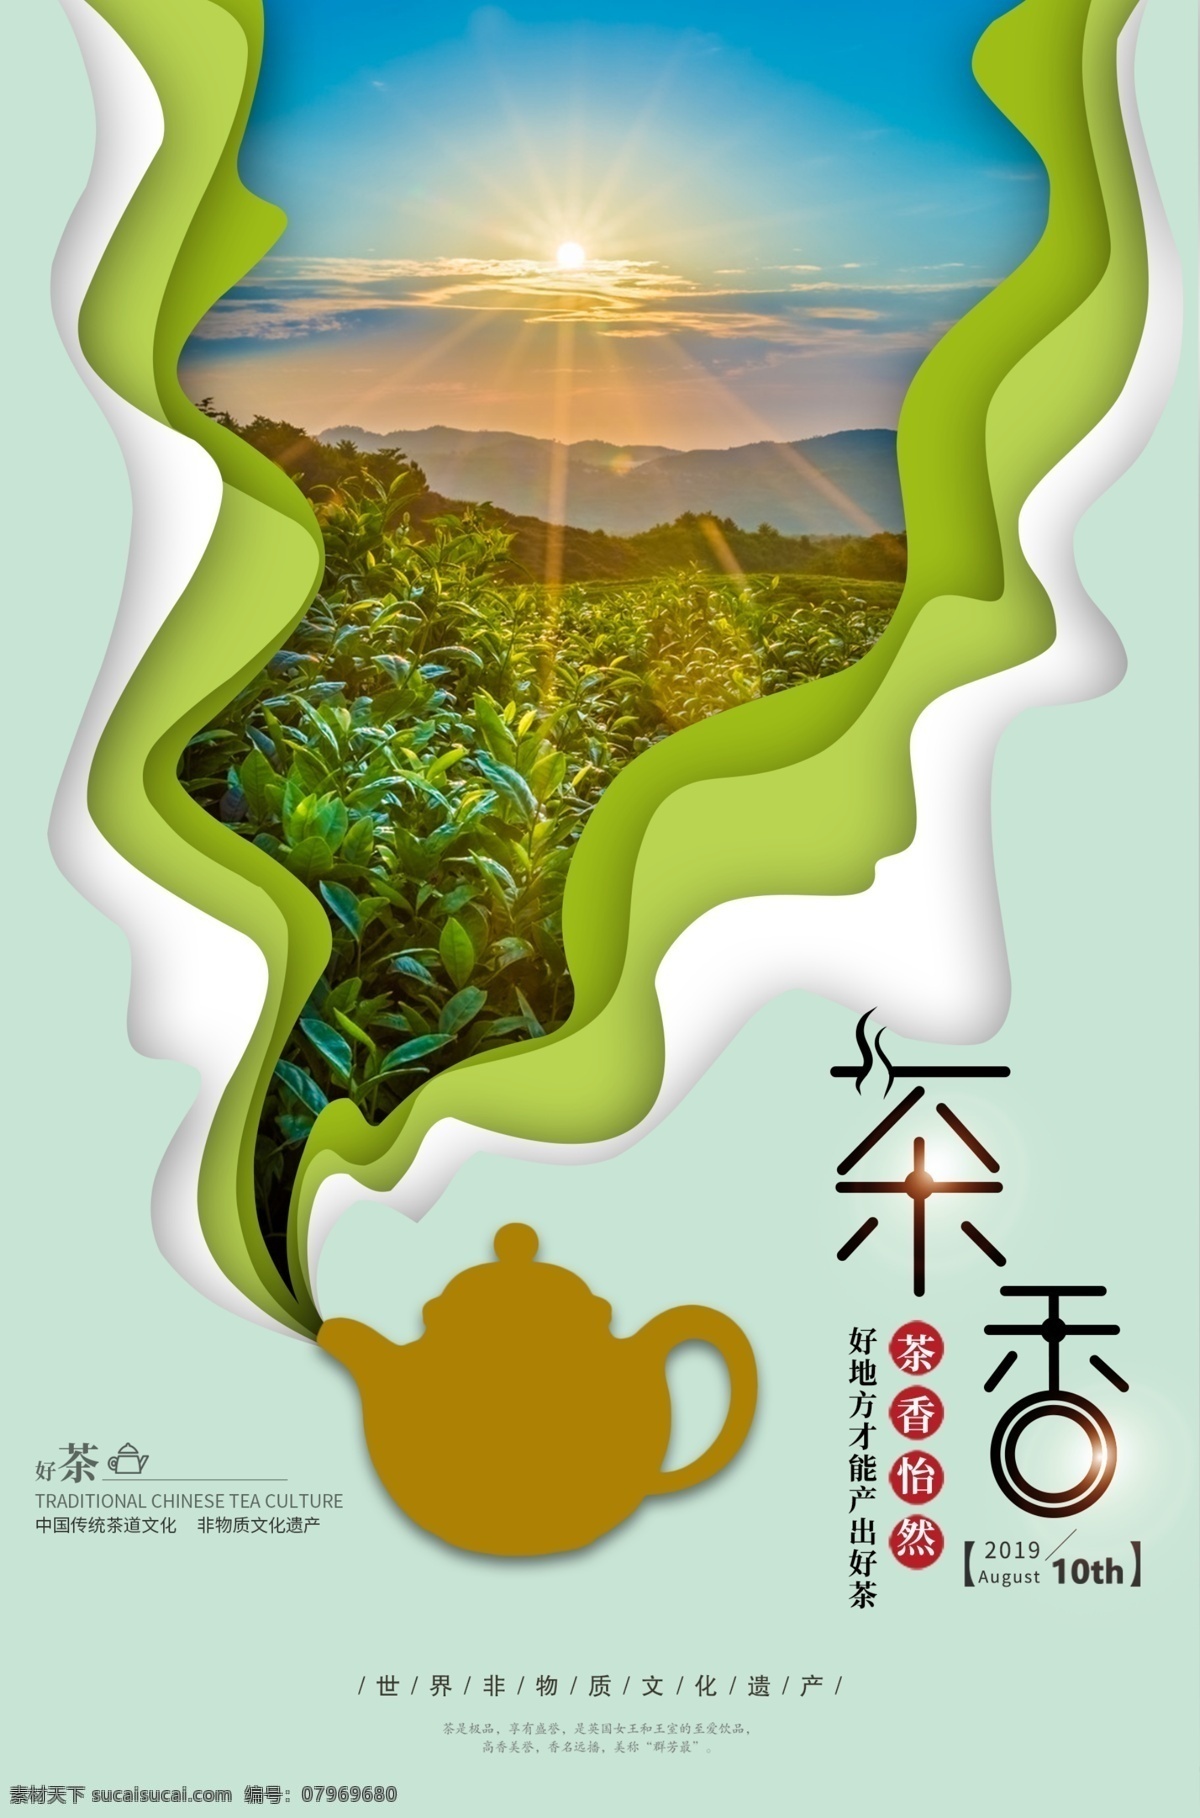 茶香海报 茶香 茶味 味道 传统 古代 绿茶 茶园 泡茶 阳光 意境 海报 促销 活动 宣传